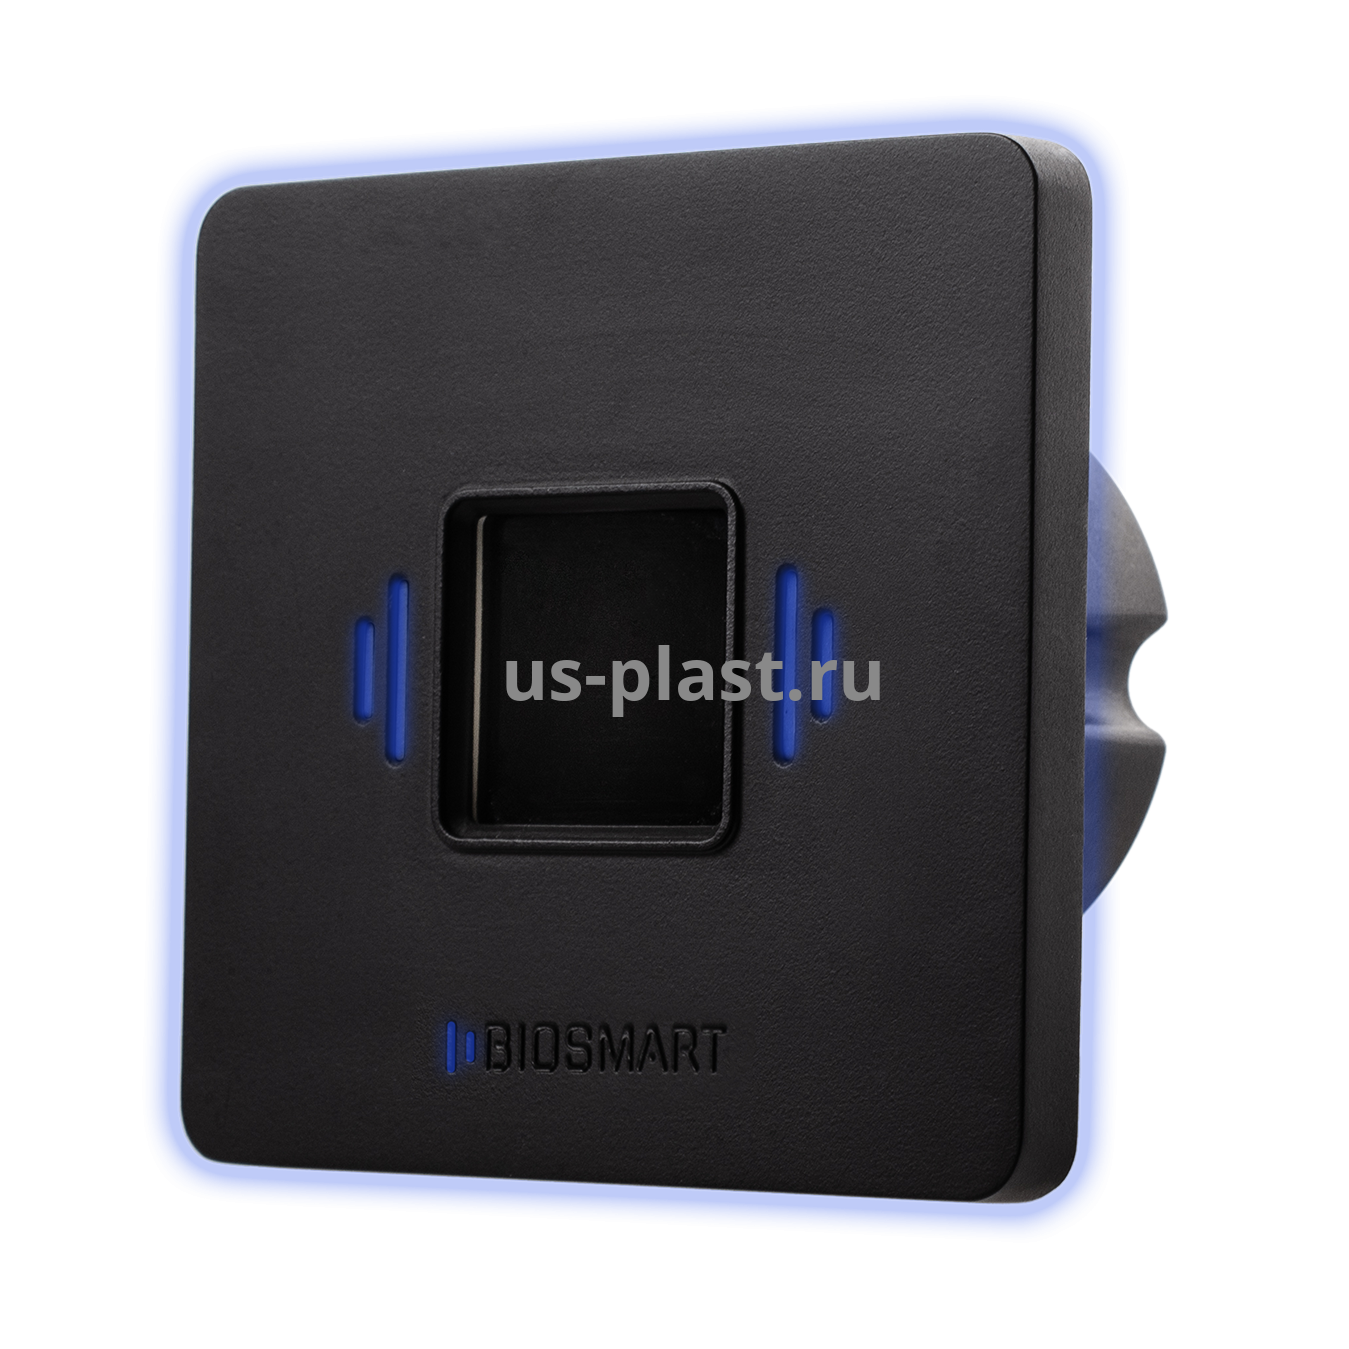 BioSmart PALMJET, встраиваемый биометрический считыватель вен ладони и RFID-карт. Фото N4